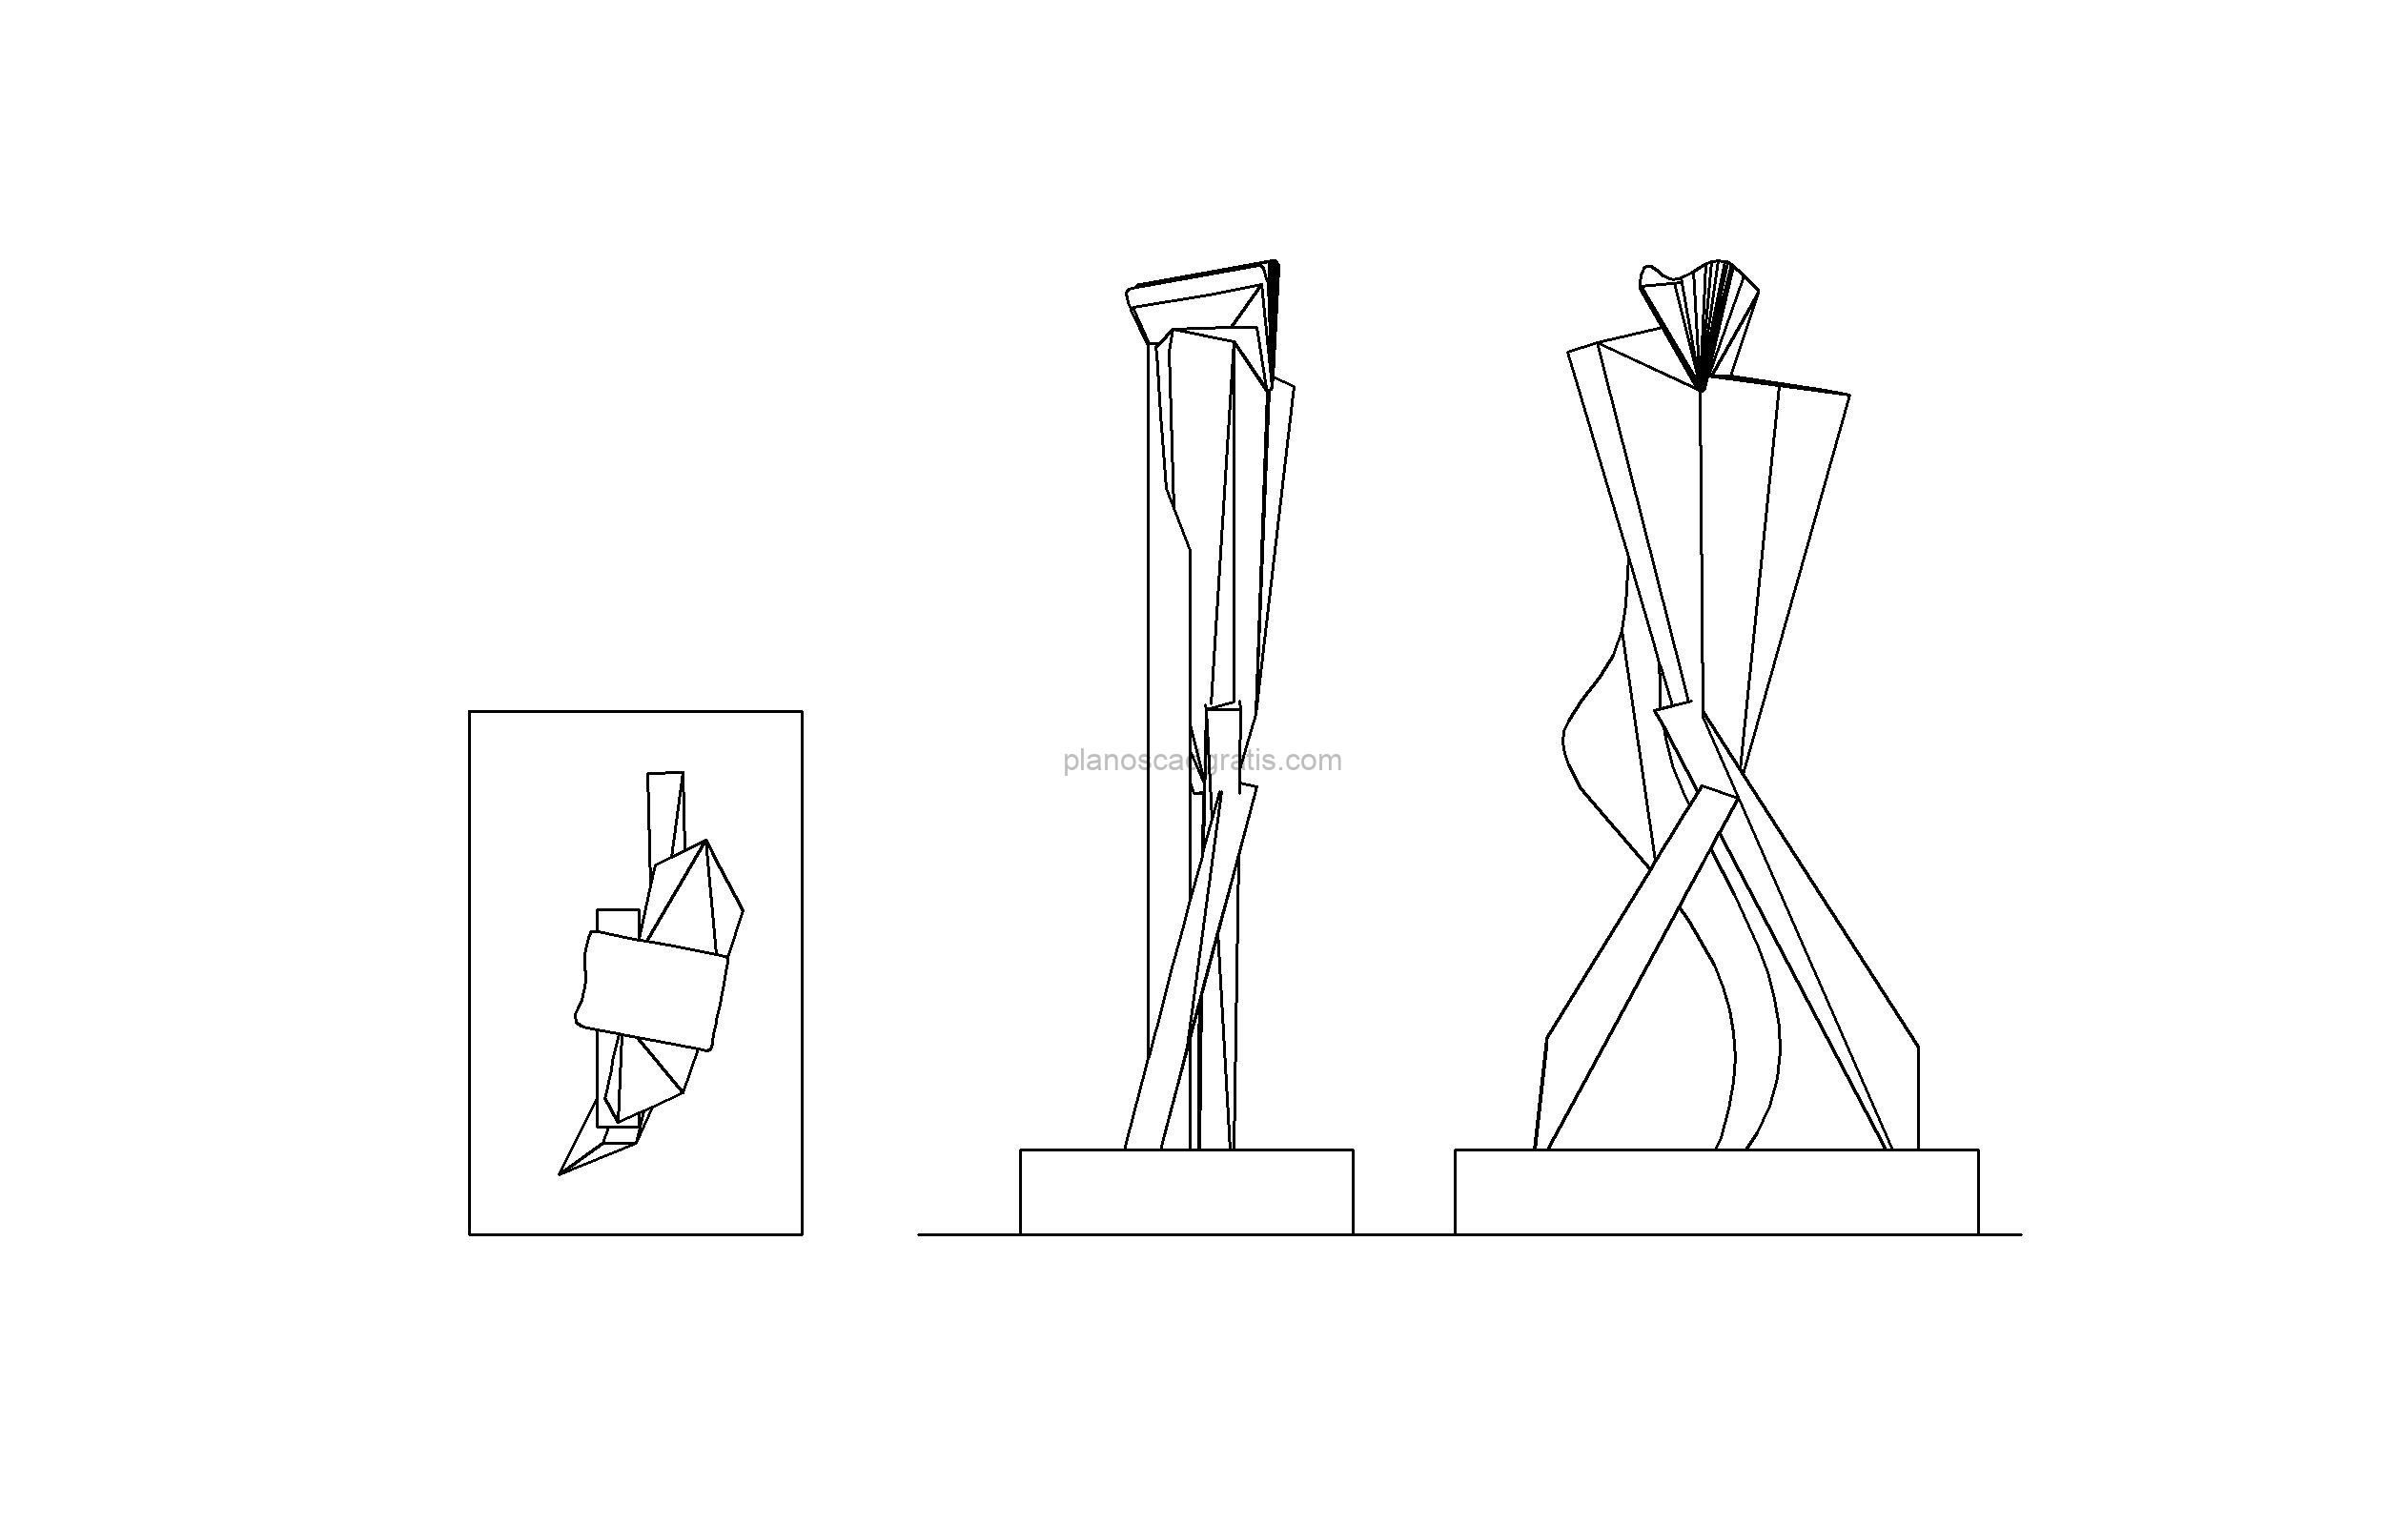 dibujo de autocad de una escultura de arte moderno, vistas en planta y elevaciones para descarga gratis formato dwg